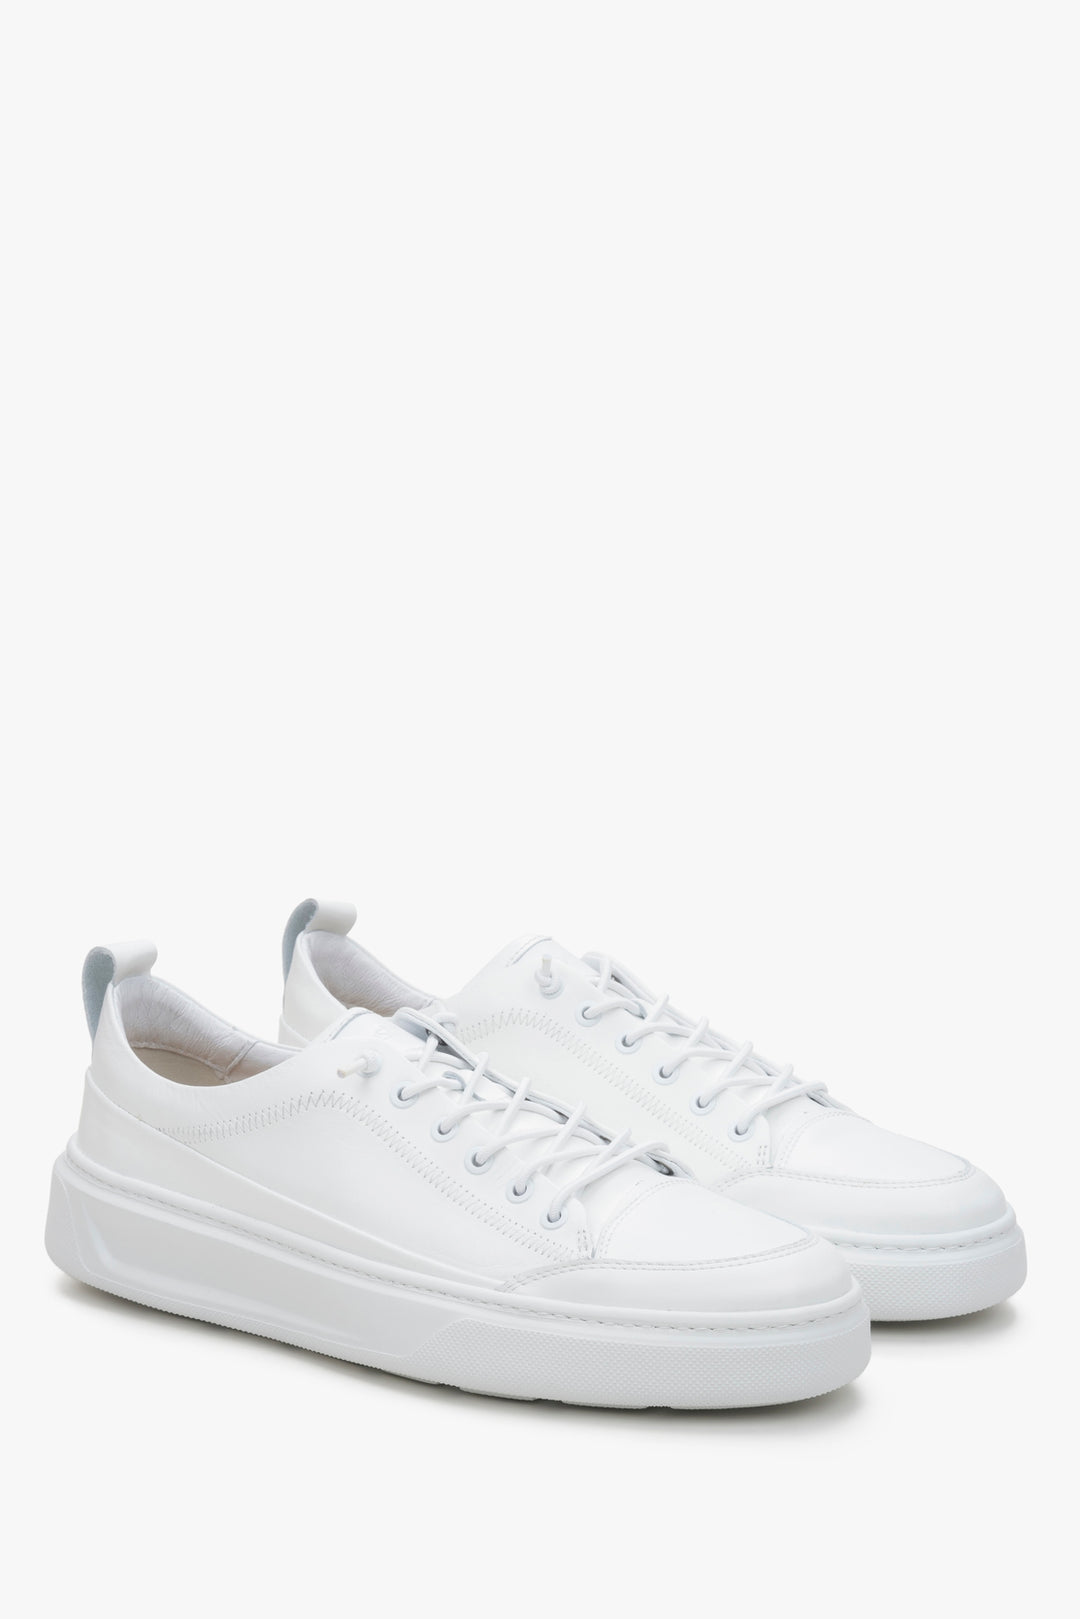 Estro men's leather sneakers in white colour.